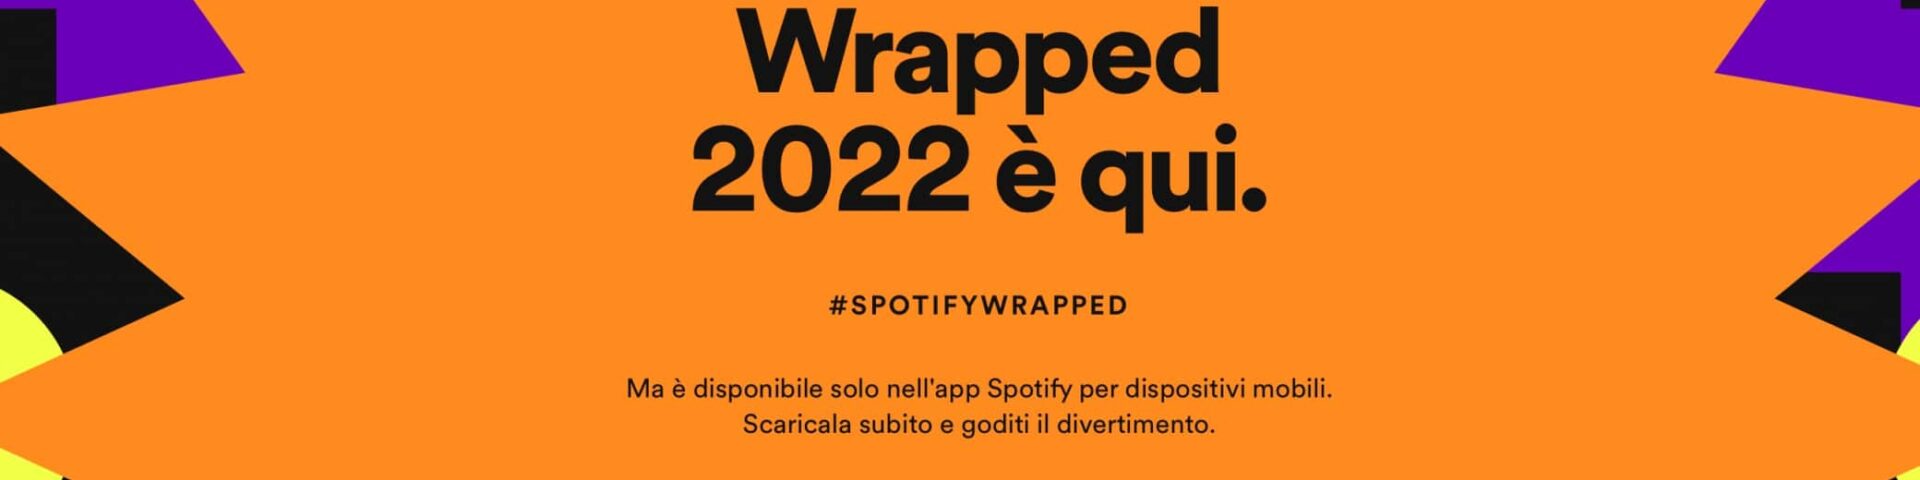 Perché Spotify Wrapped 2022 non funziona?